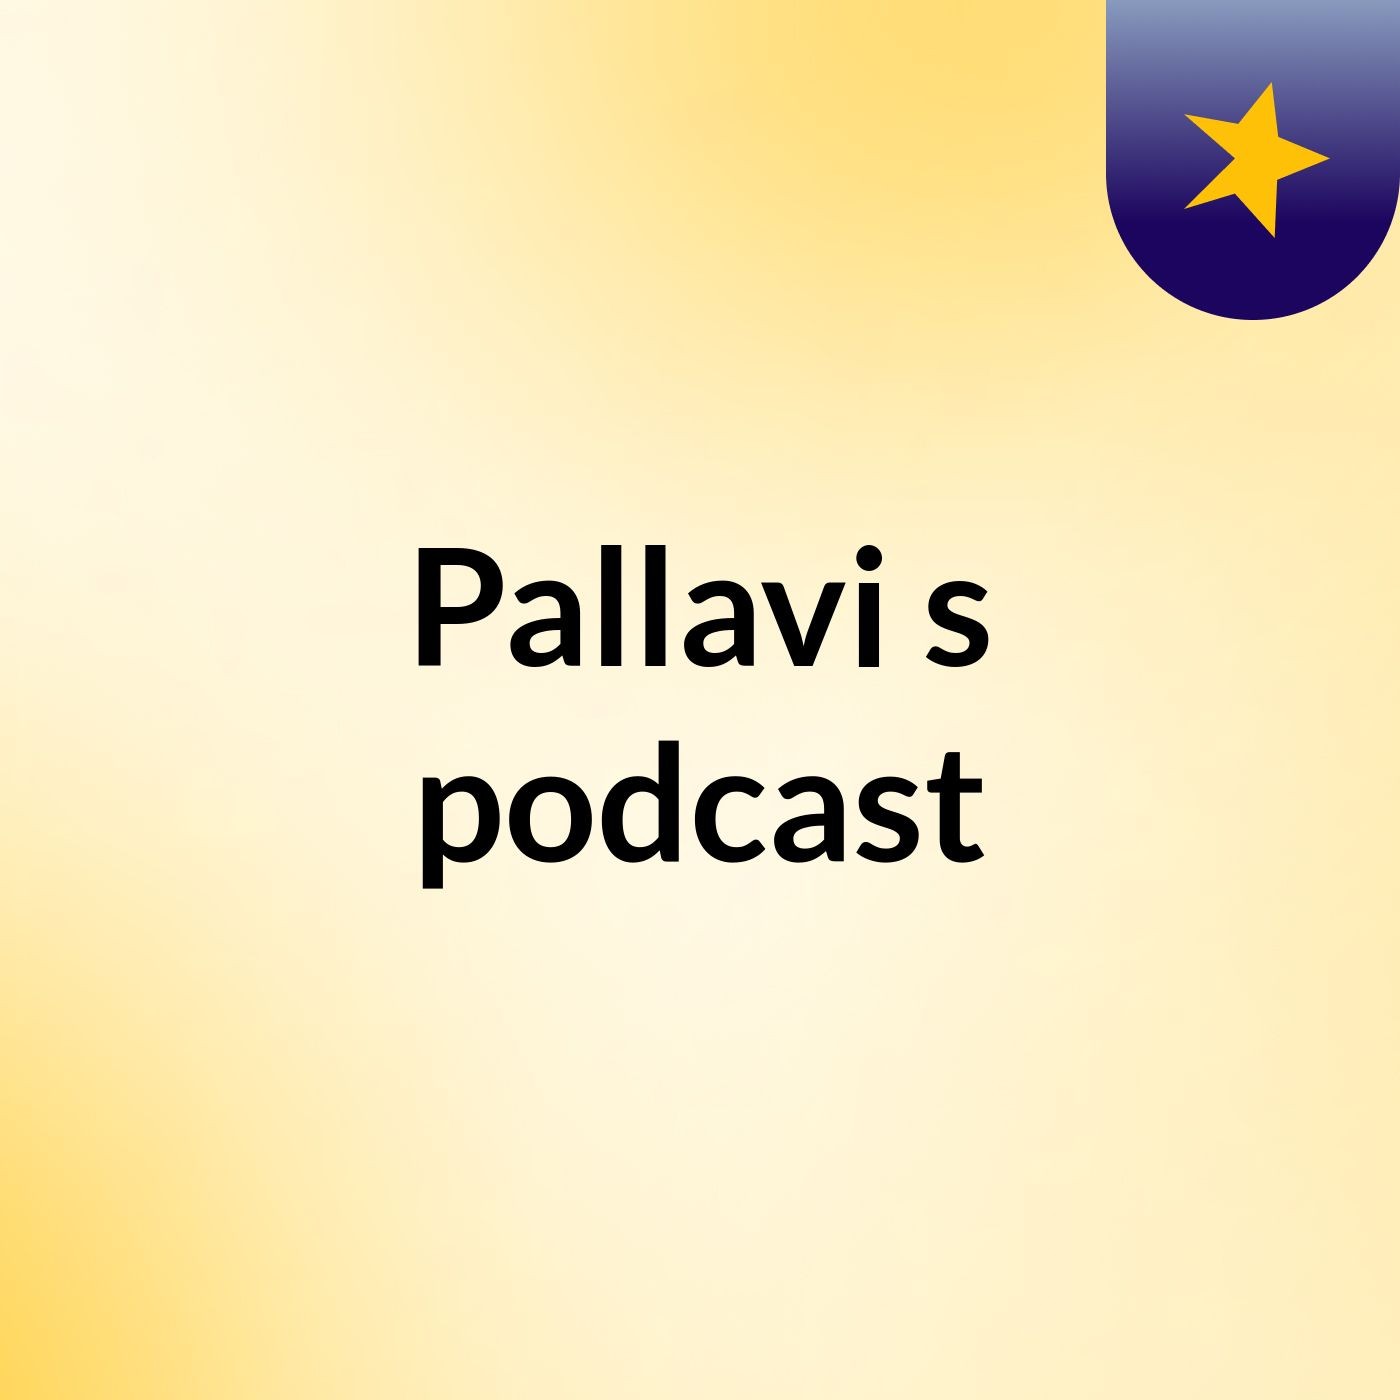 Episode 9 - Pallavi's podcast